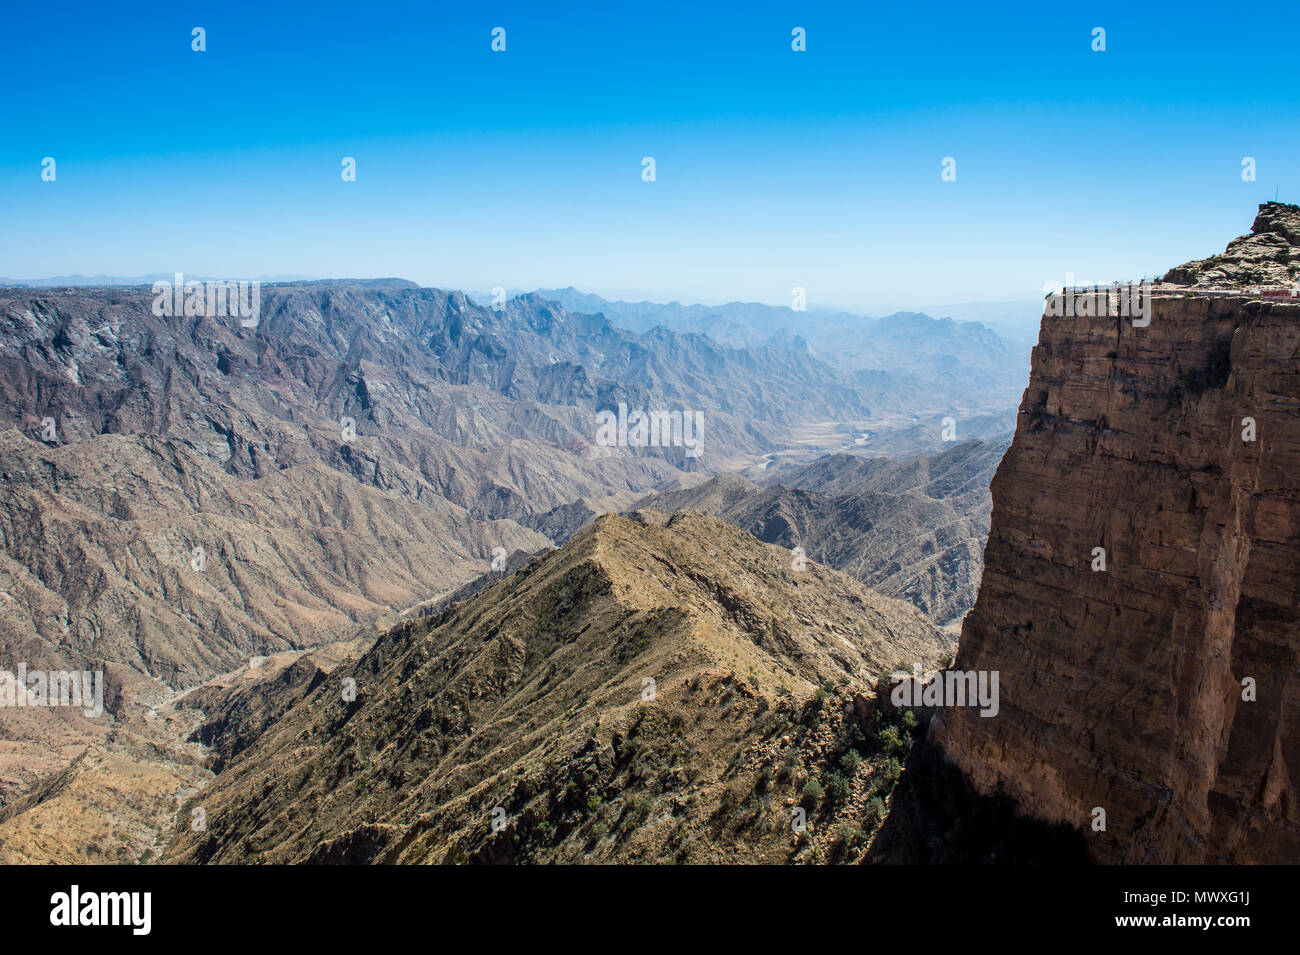 Magnifique paysage de montagnes autour de Habala, Abha, Arabie saoudite, Moyen Orient Banque D'Images